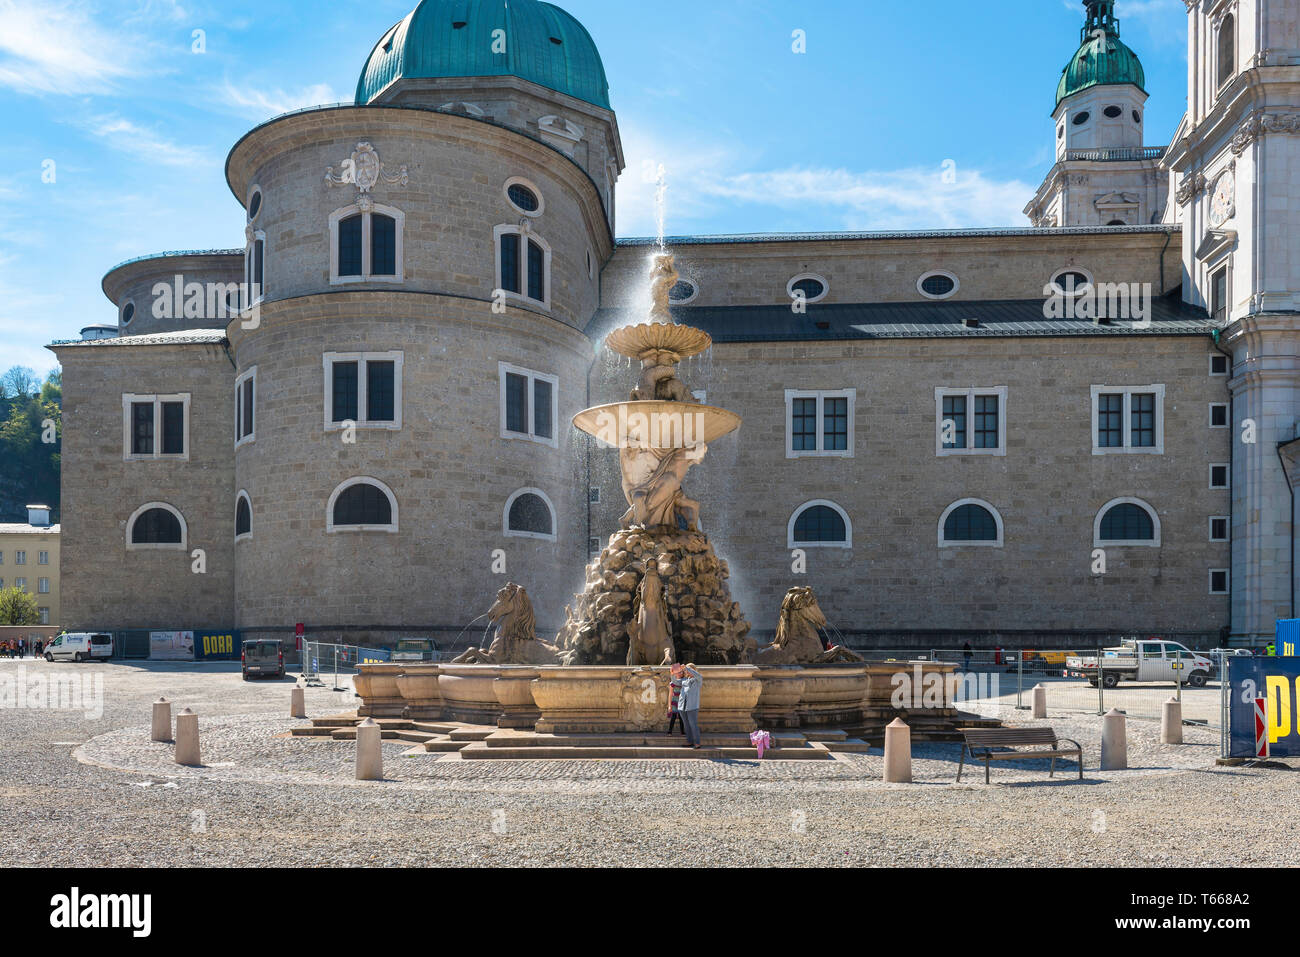 Salzburg Residenzplatz, Blick auf eine Mutter und Tochter ein Foto neben dem Brunnen auf dem Residenzplatz in Salzburg Altstadt, Österreich gelegen. Stockfoto